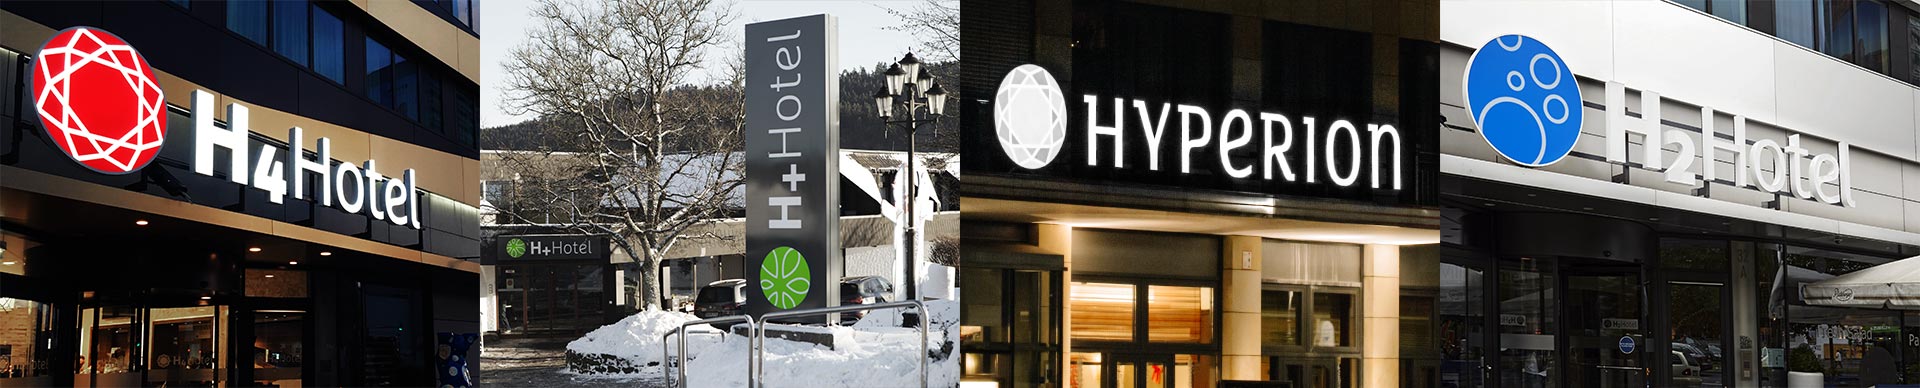 Entreés mit Logo der Hotels H4, H+, Hyperion und H2